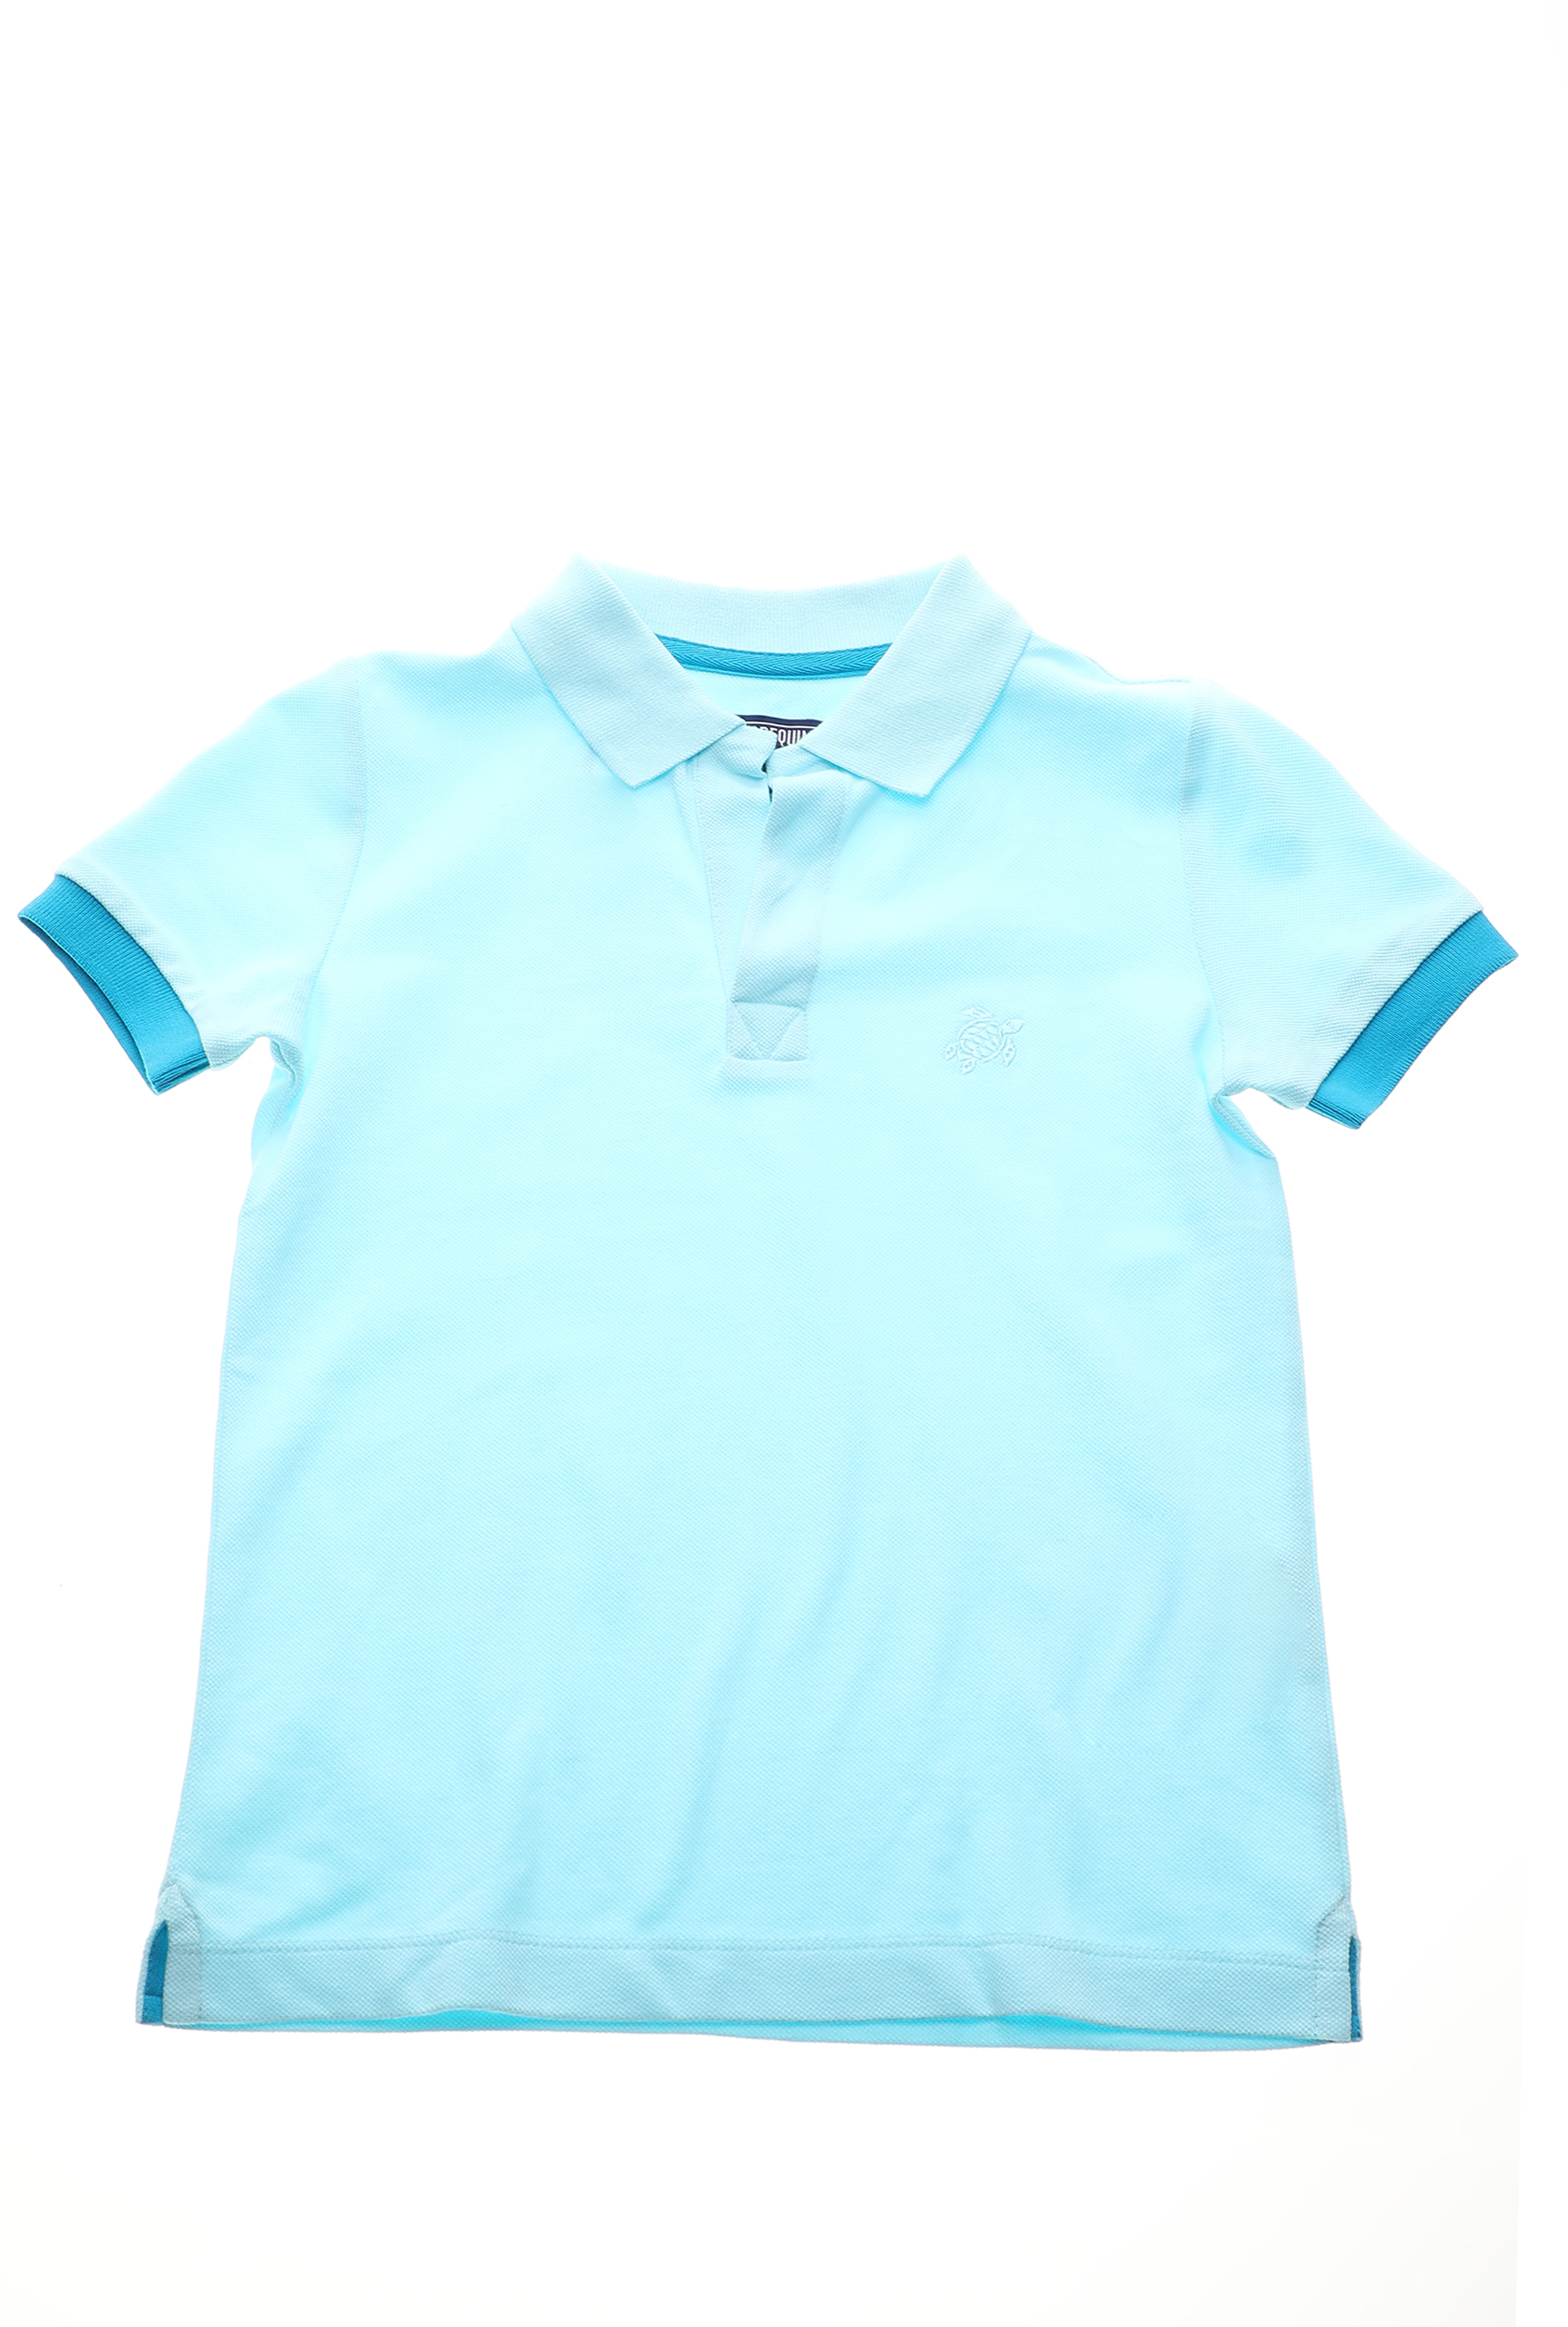 VILEBREQUIN – Παιδική polo μπλούζα VILEBREQUIN PANTIN μπλε 1677344.0-0017